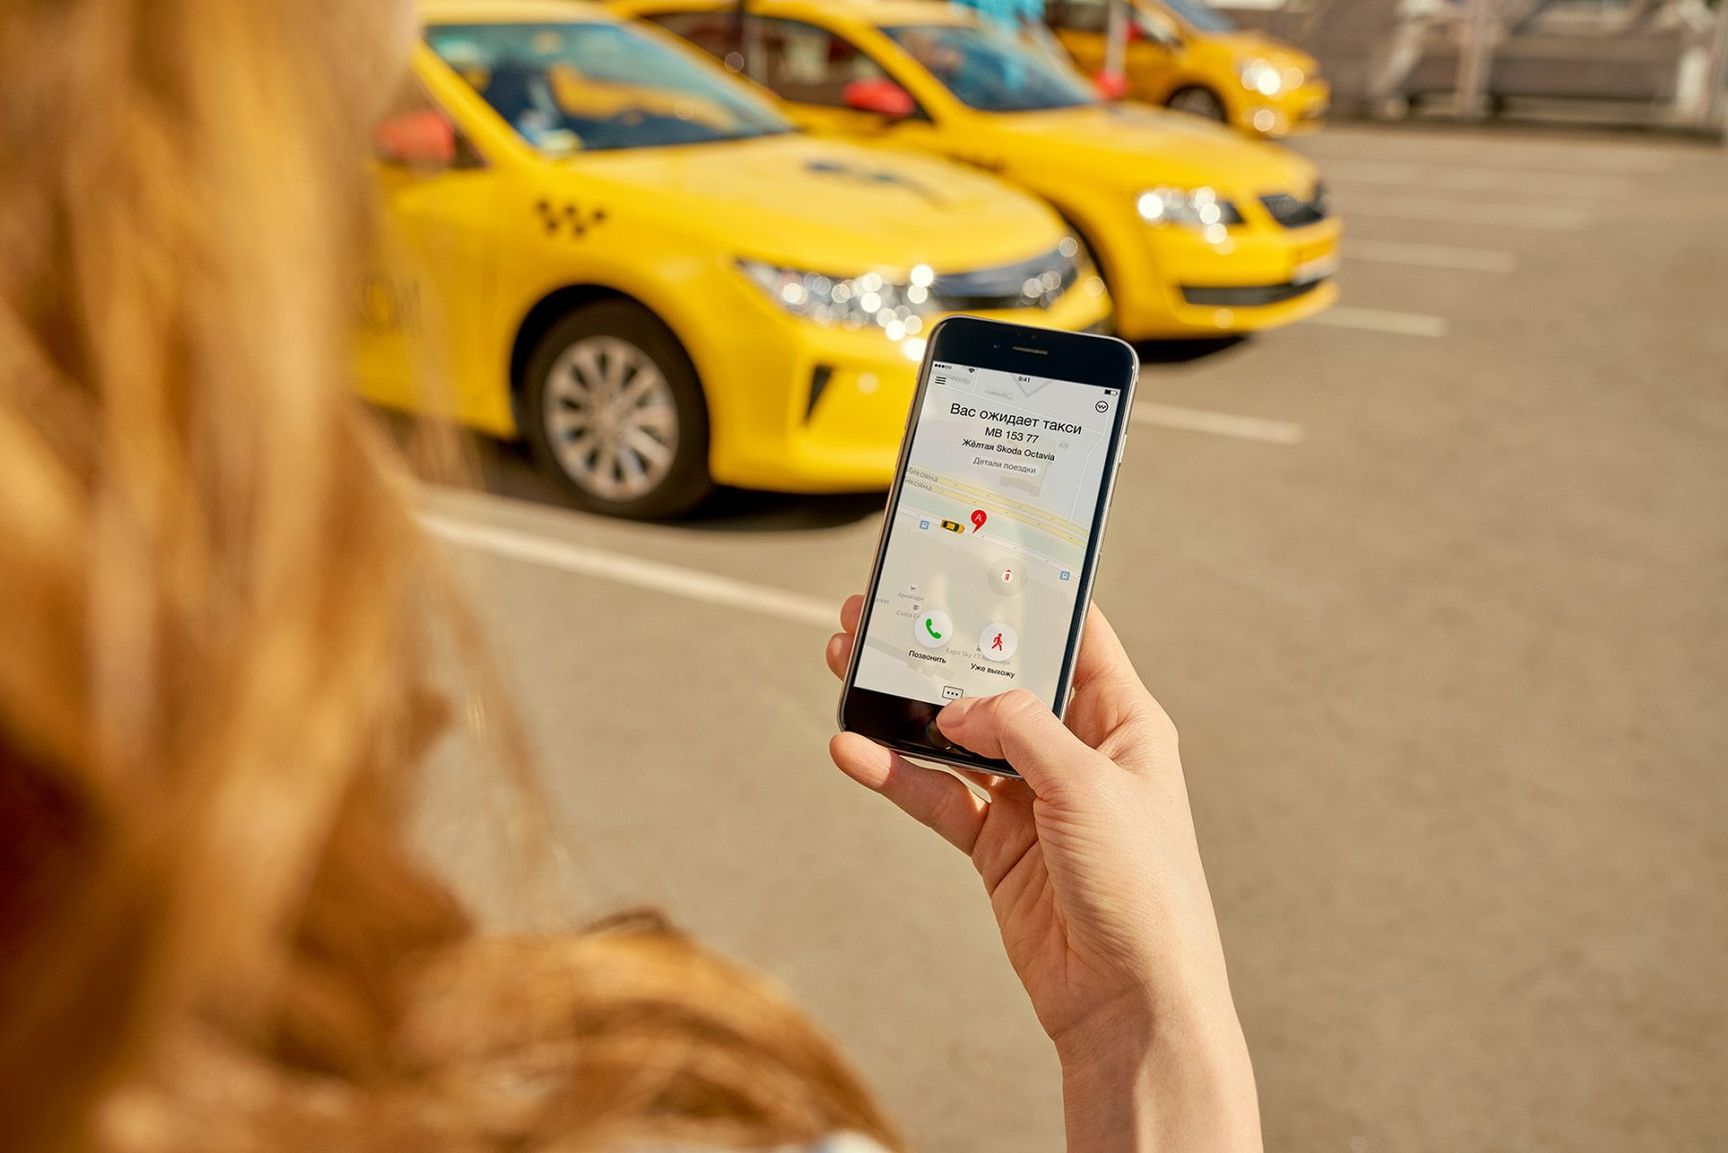 Сколько зарабатывает таксист в “Яндекс-такси”